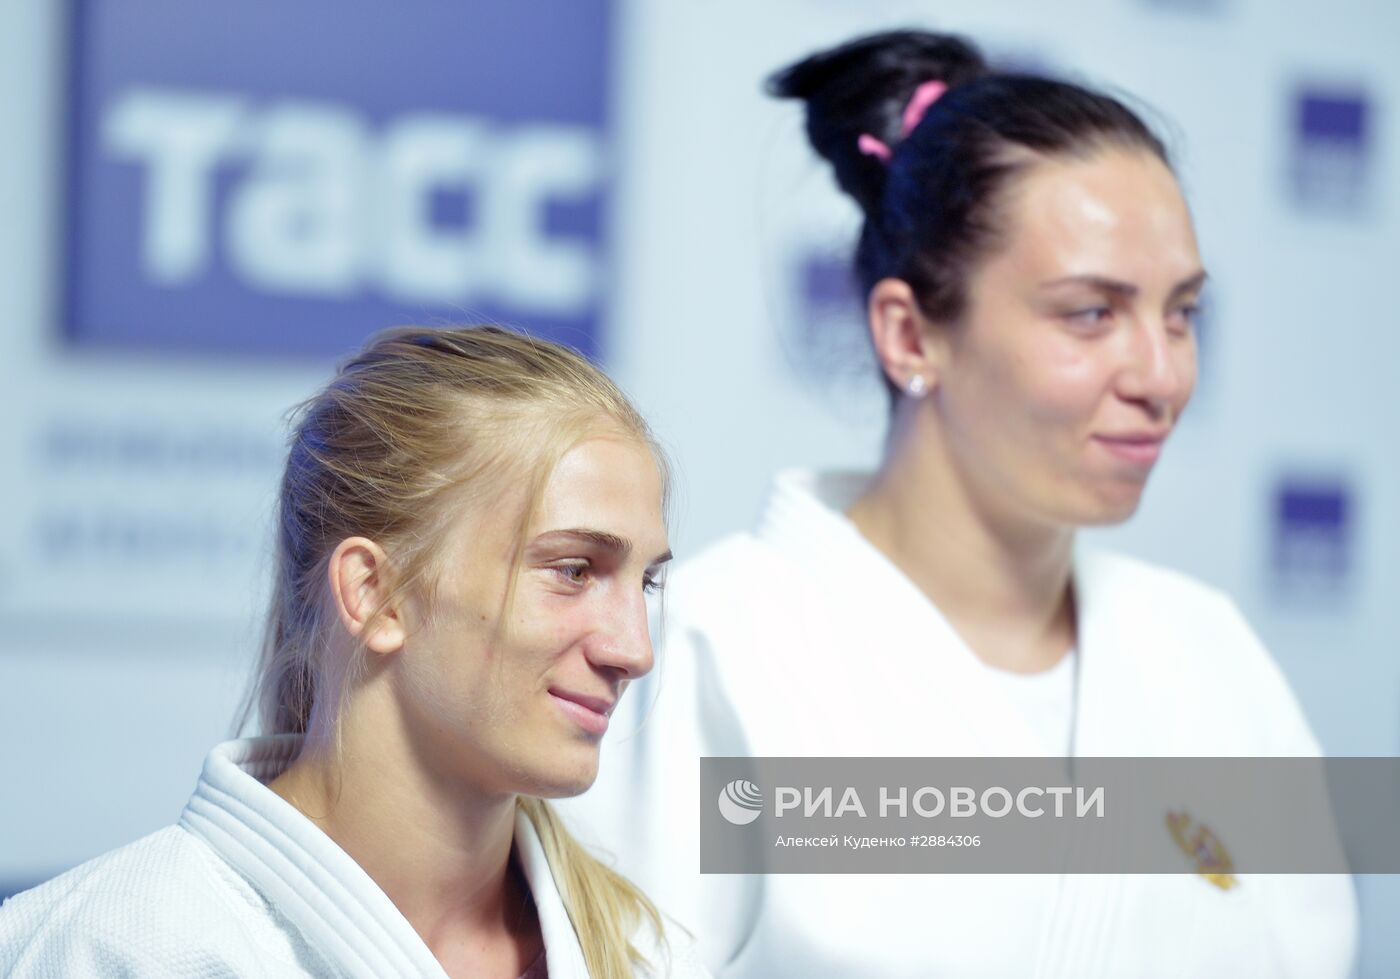 Презентация состава сборной России по дзюдо на Олимпийских играх